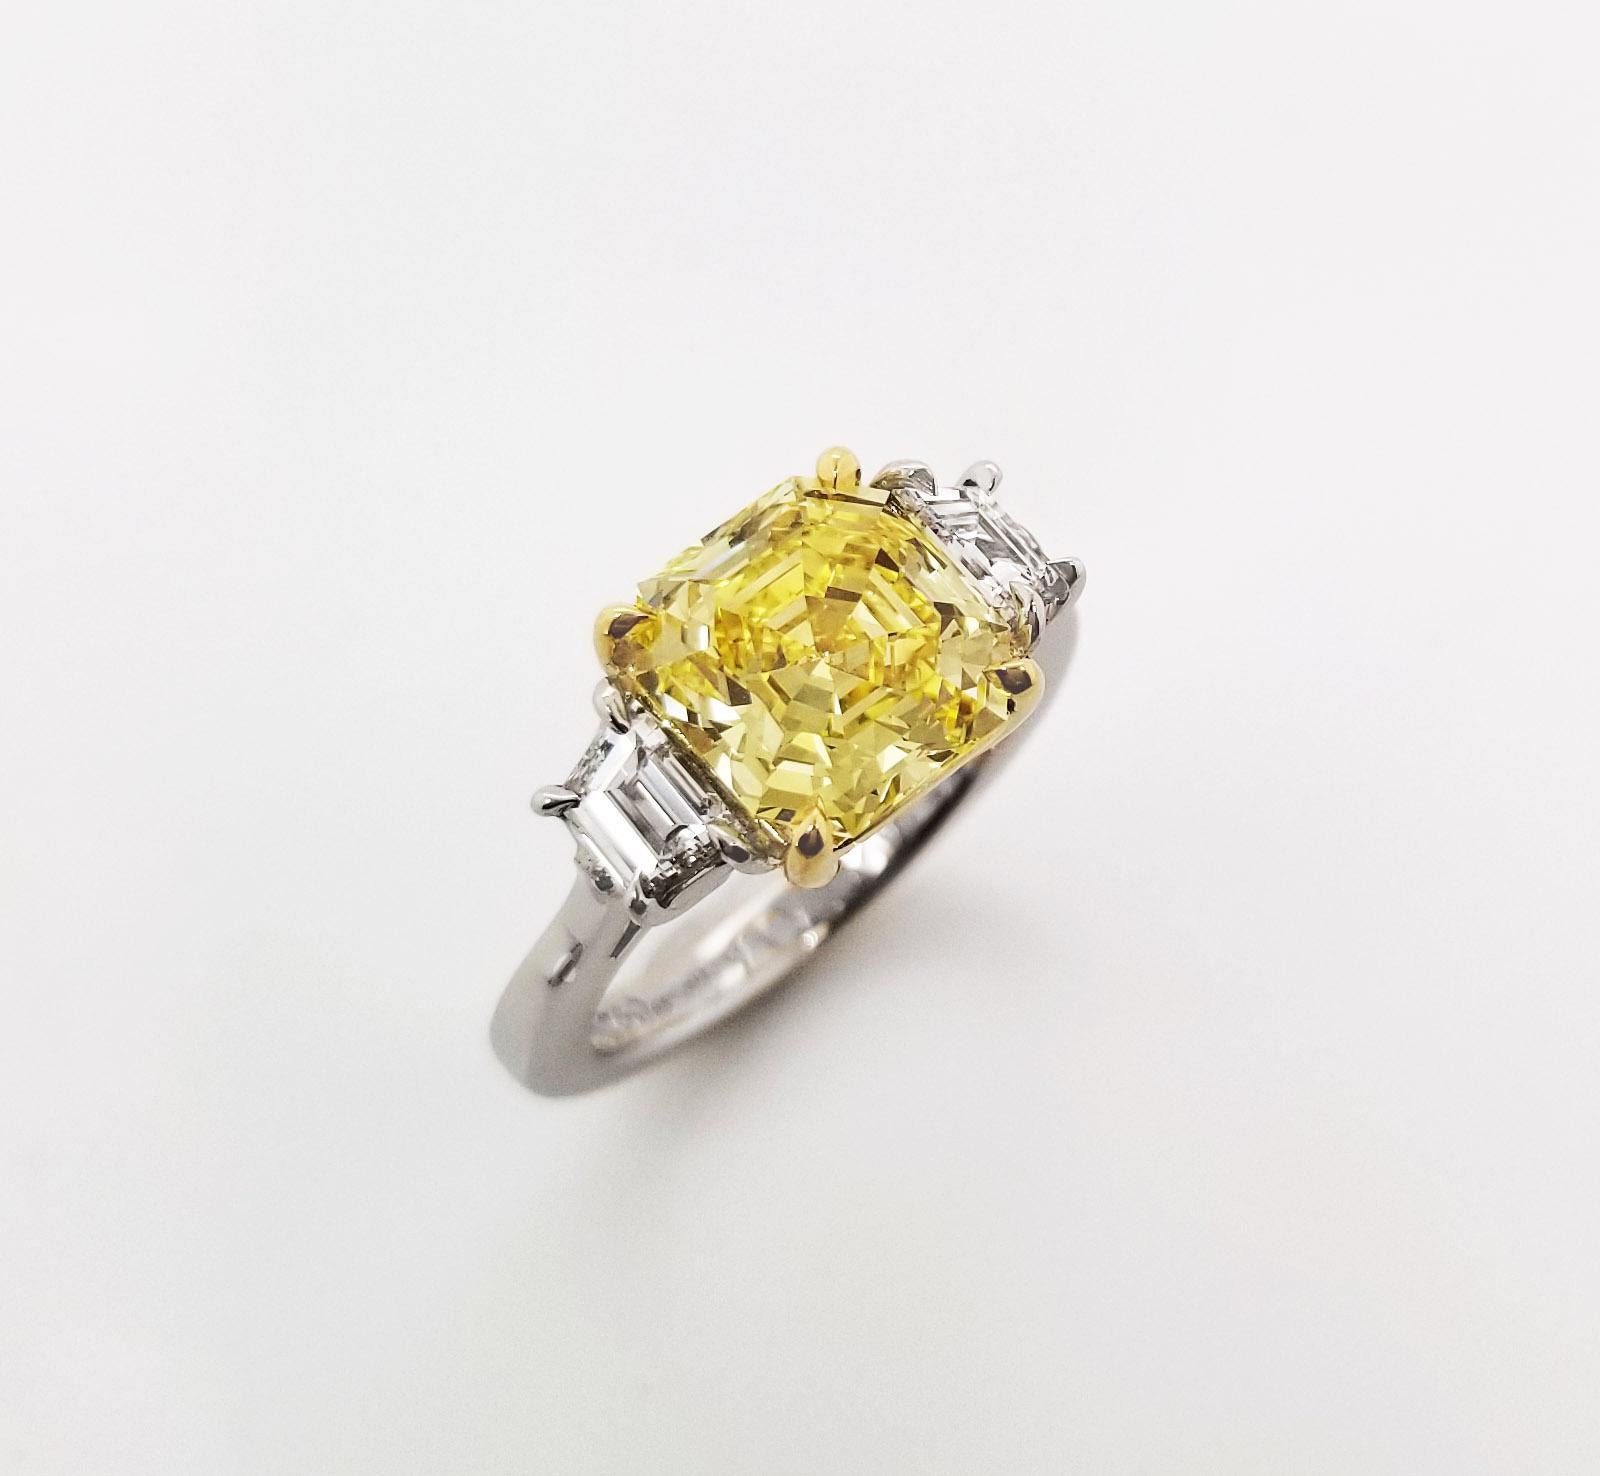 Dieser wunderschöne Ring von SCARSELLI zeichnet sich durch einen 3-karätigen Fancy Vivid Yellow Emerald Cut-Diamanten aus, der von zwei weißen Diamanten im Trapezschliff von insgesamt 0,72 Karat flankiert wird (siehe Abbildung des GIA-Zertifikats